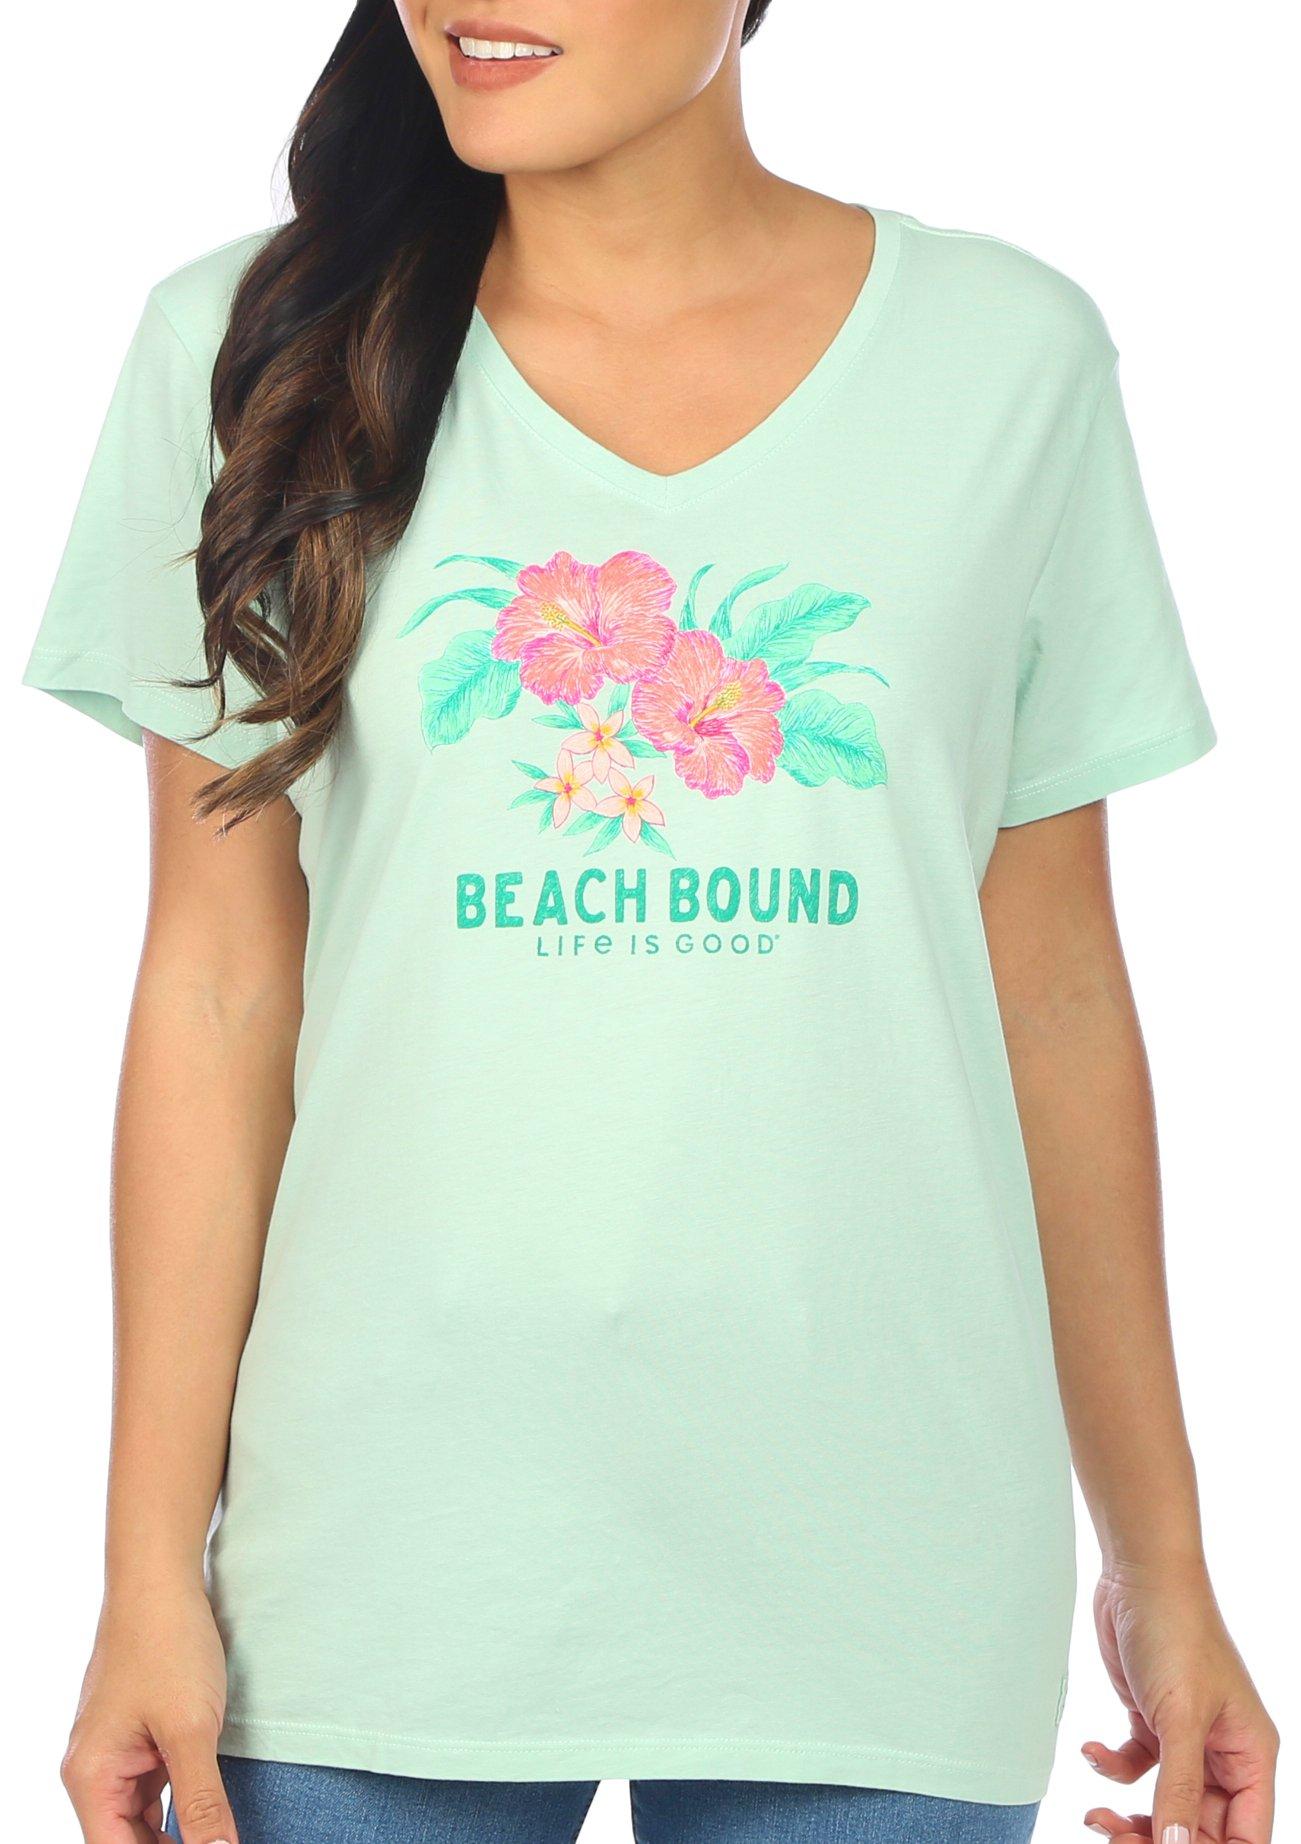 Reel Legends Summer T-shirts for Women